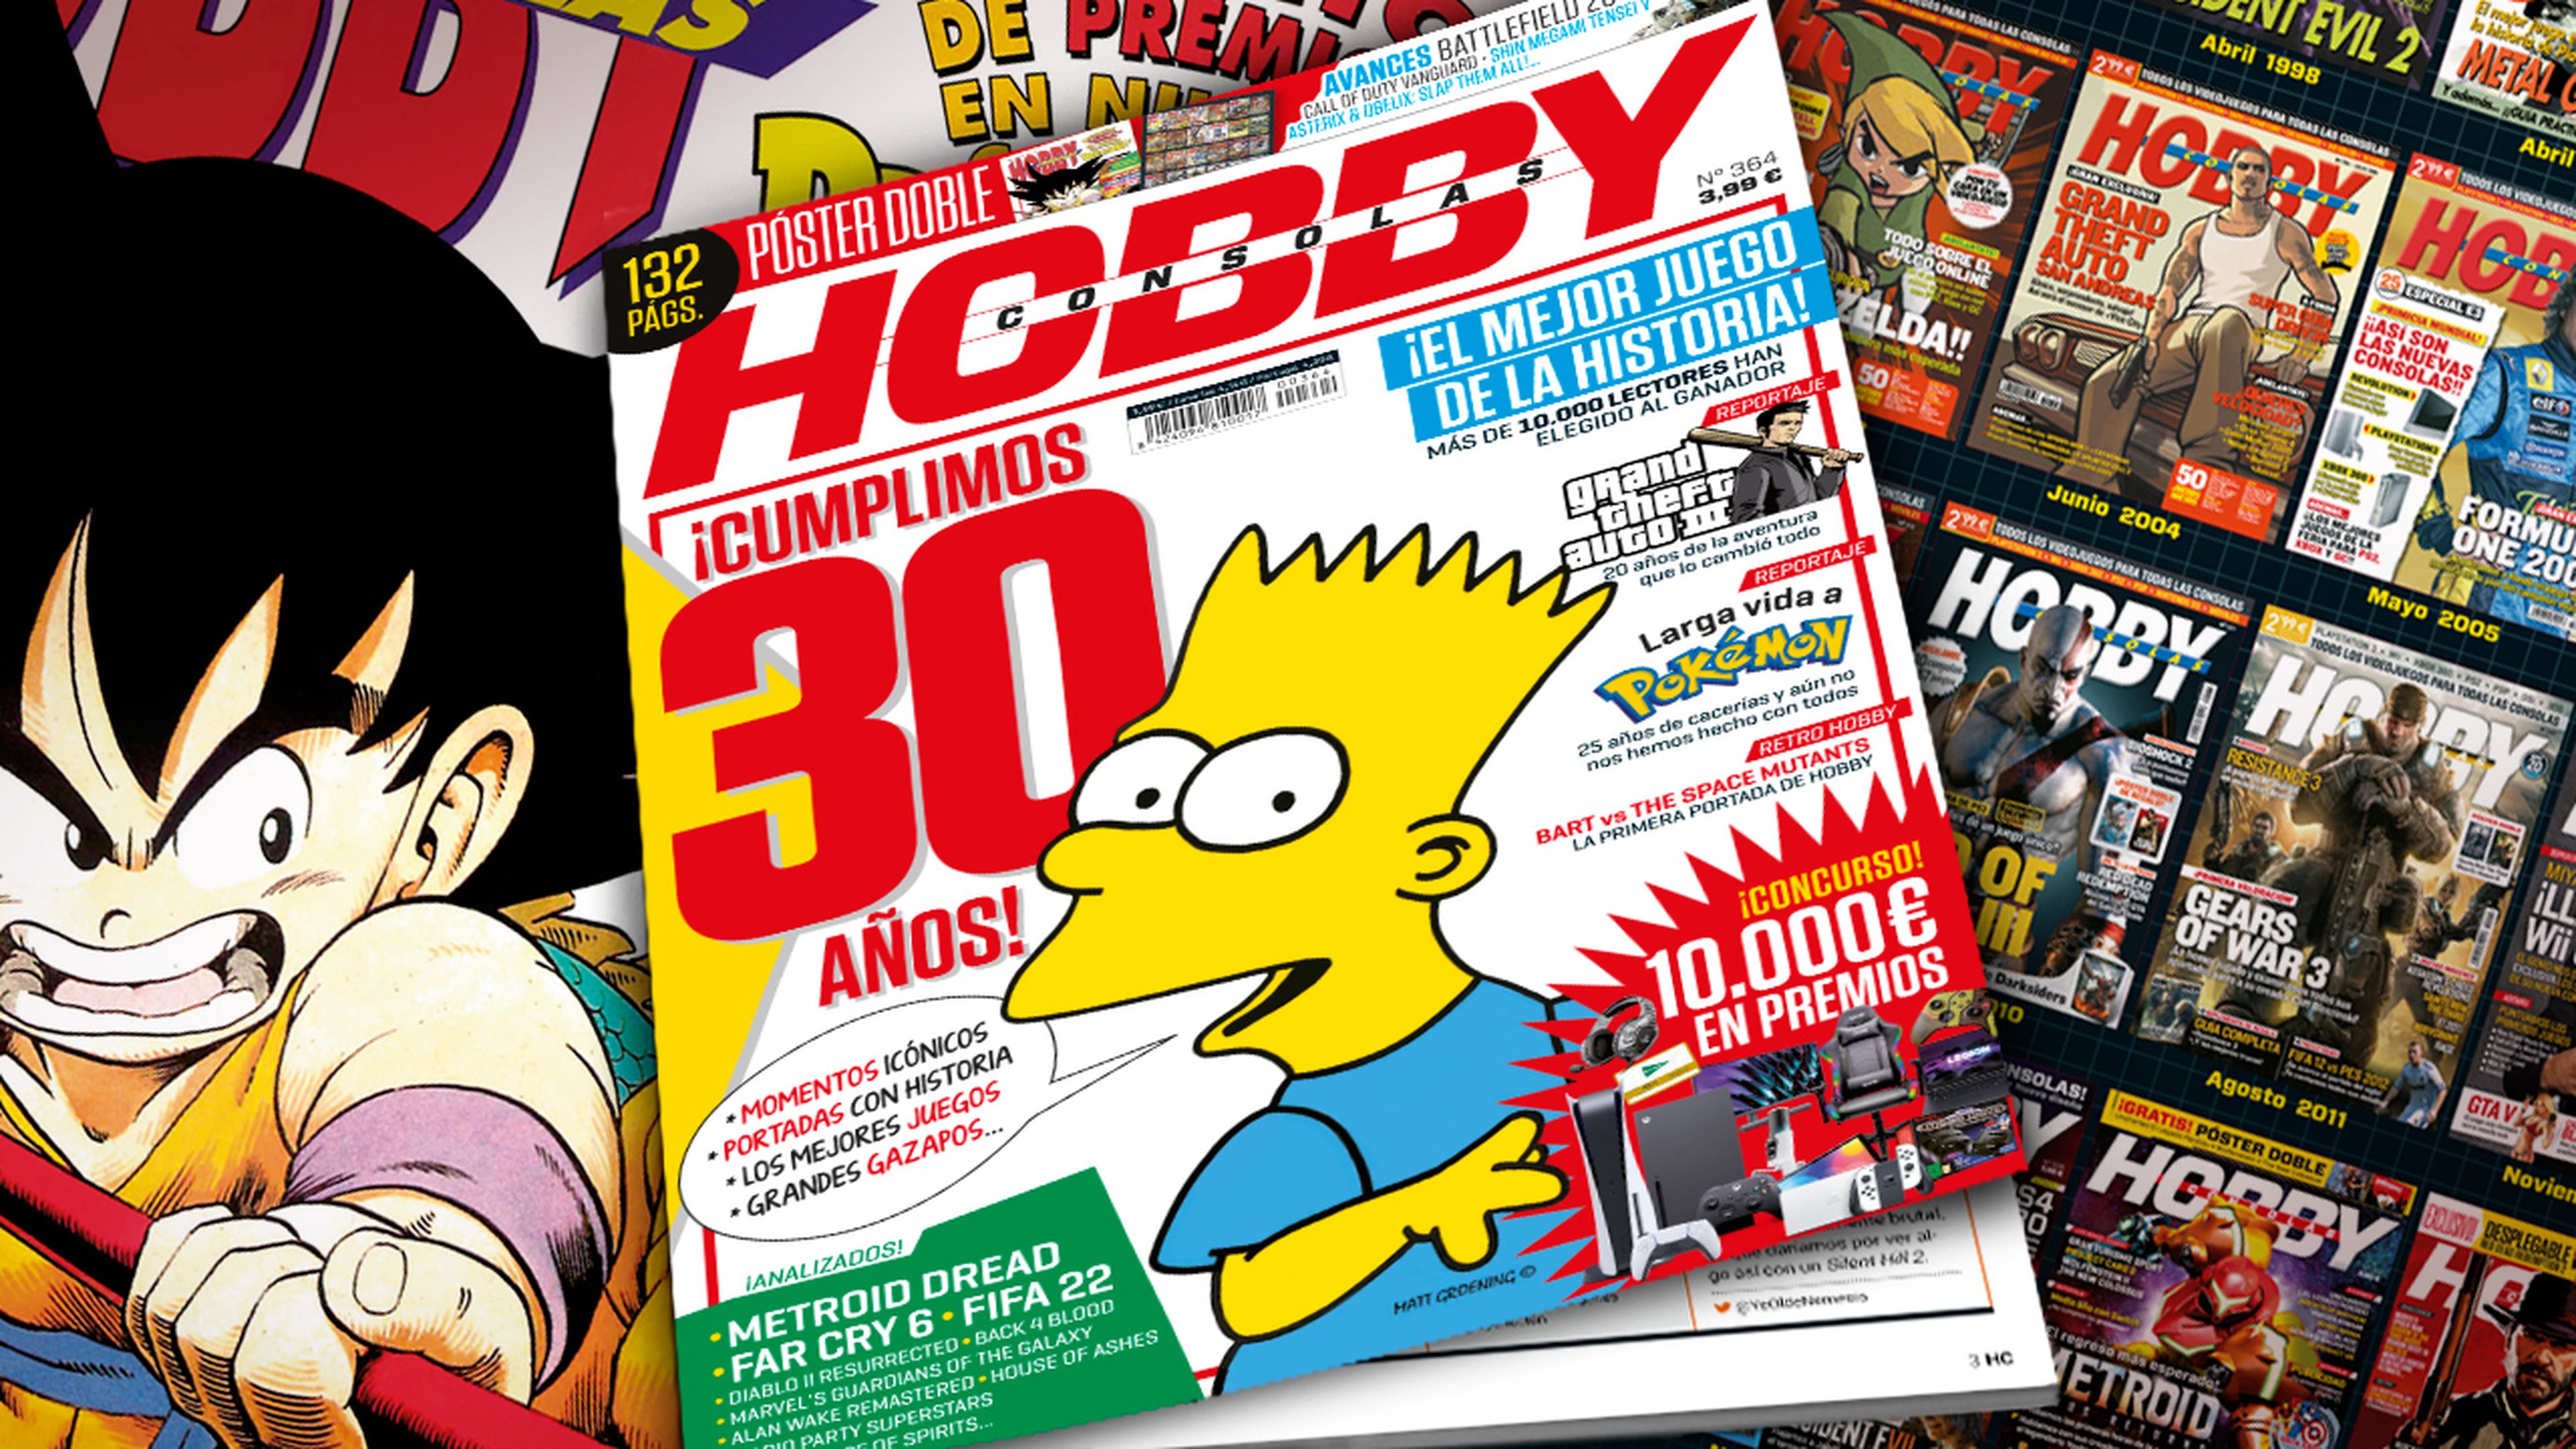 Hobby Consolas 364, a la venta con portada de Bart Simpson, un póster doble y un megaconcurso a lo número 1